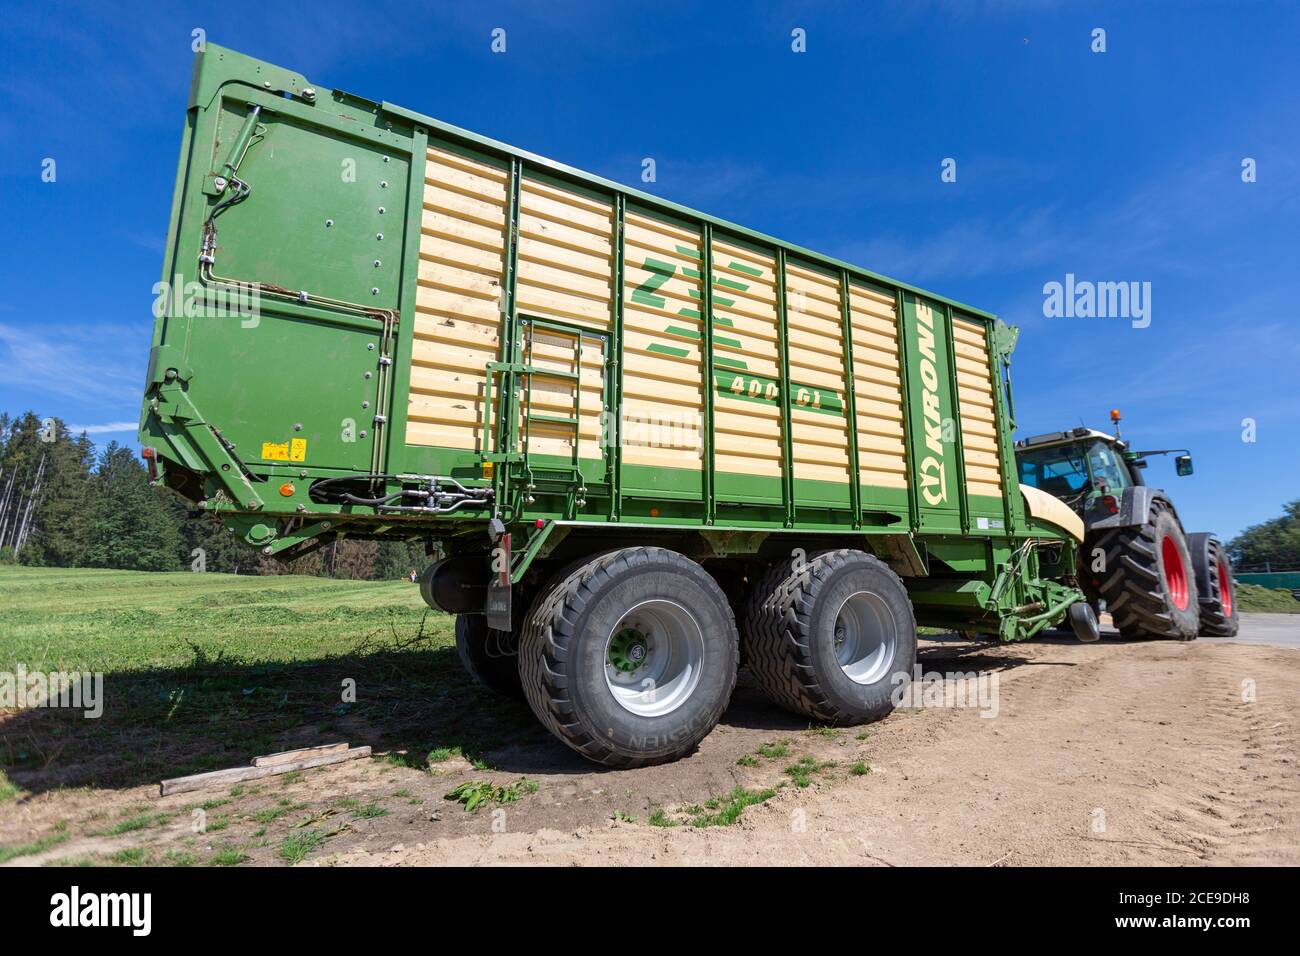 BAYERN / DEUTSCHLAND - 20. AUGUST 2020: Fendt Traktor mit Ladewagen, arbeitet an einer Biogasanlage Stockfoto